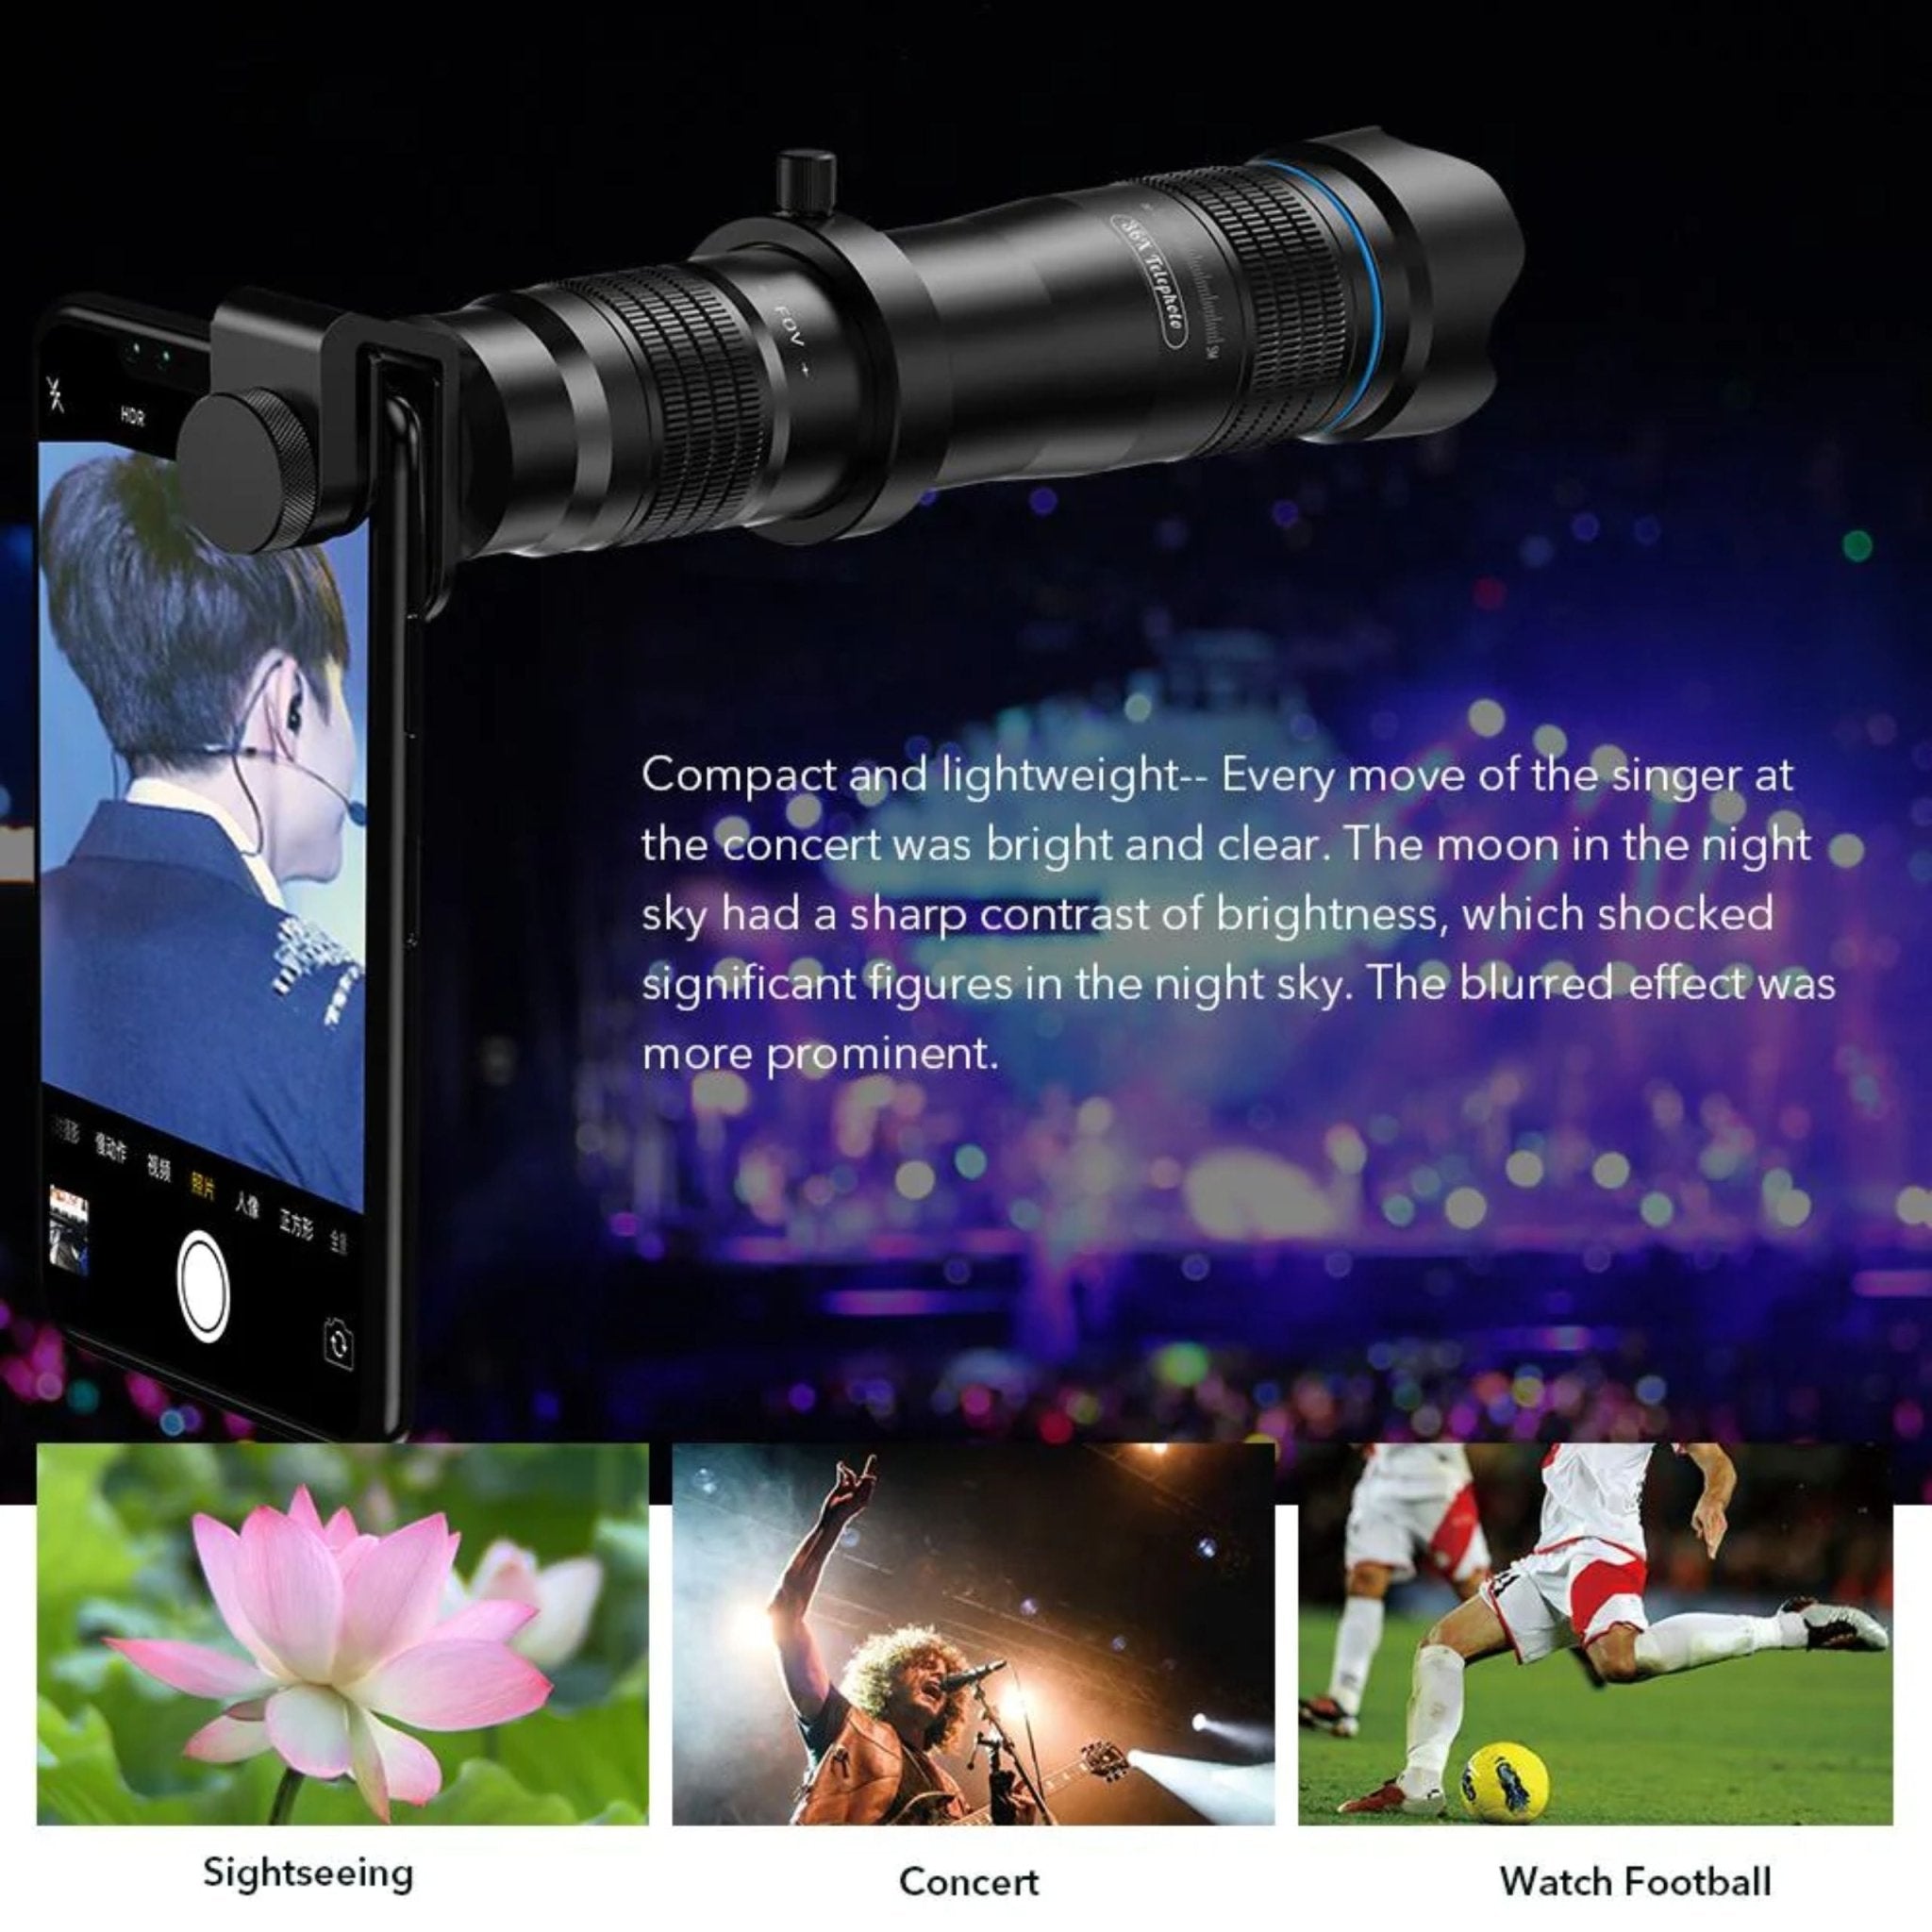 Apexel 36X Telephoto Smartphone Lens - Black